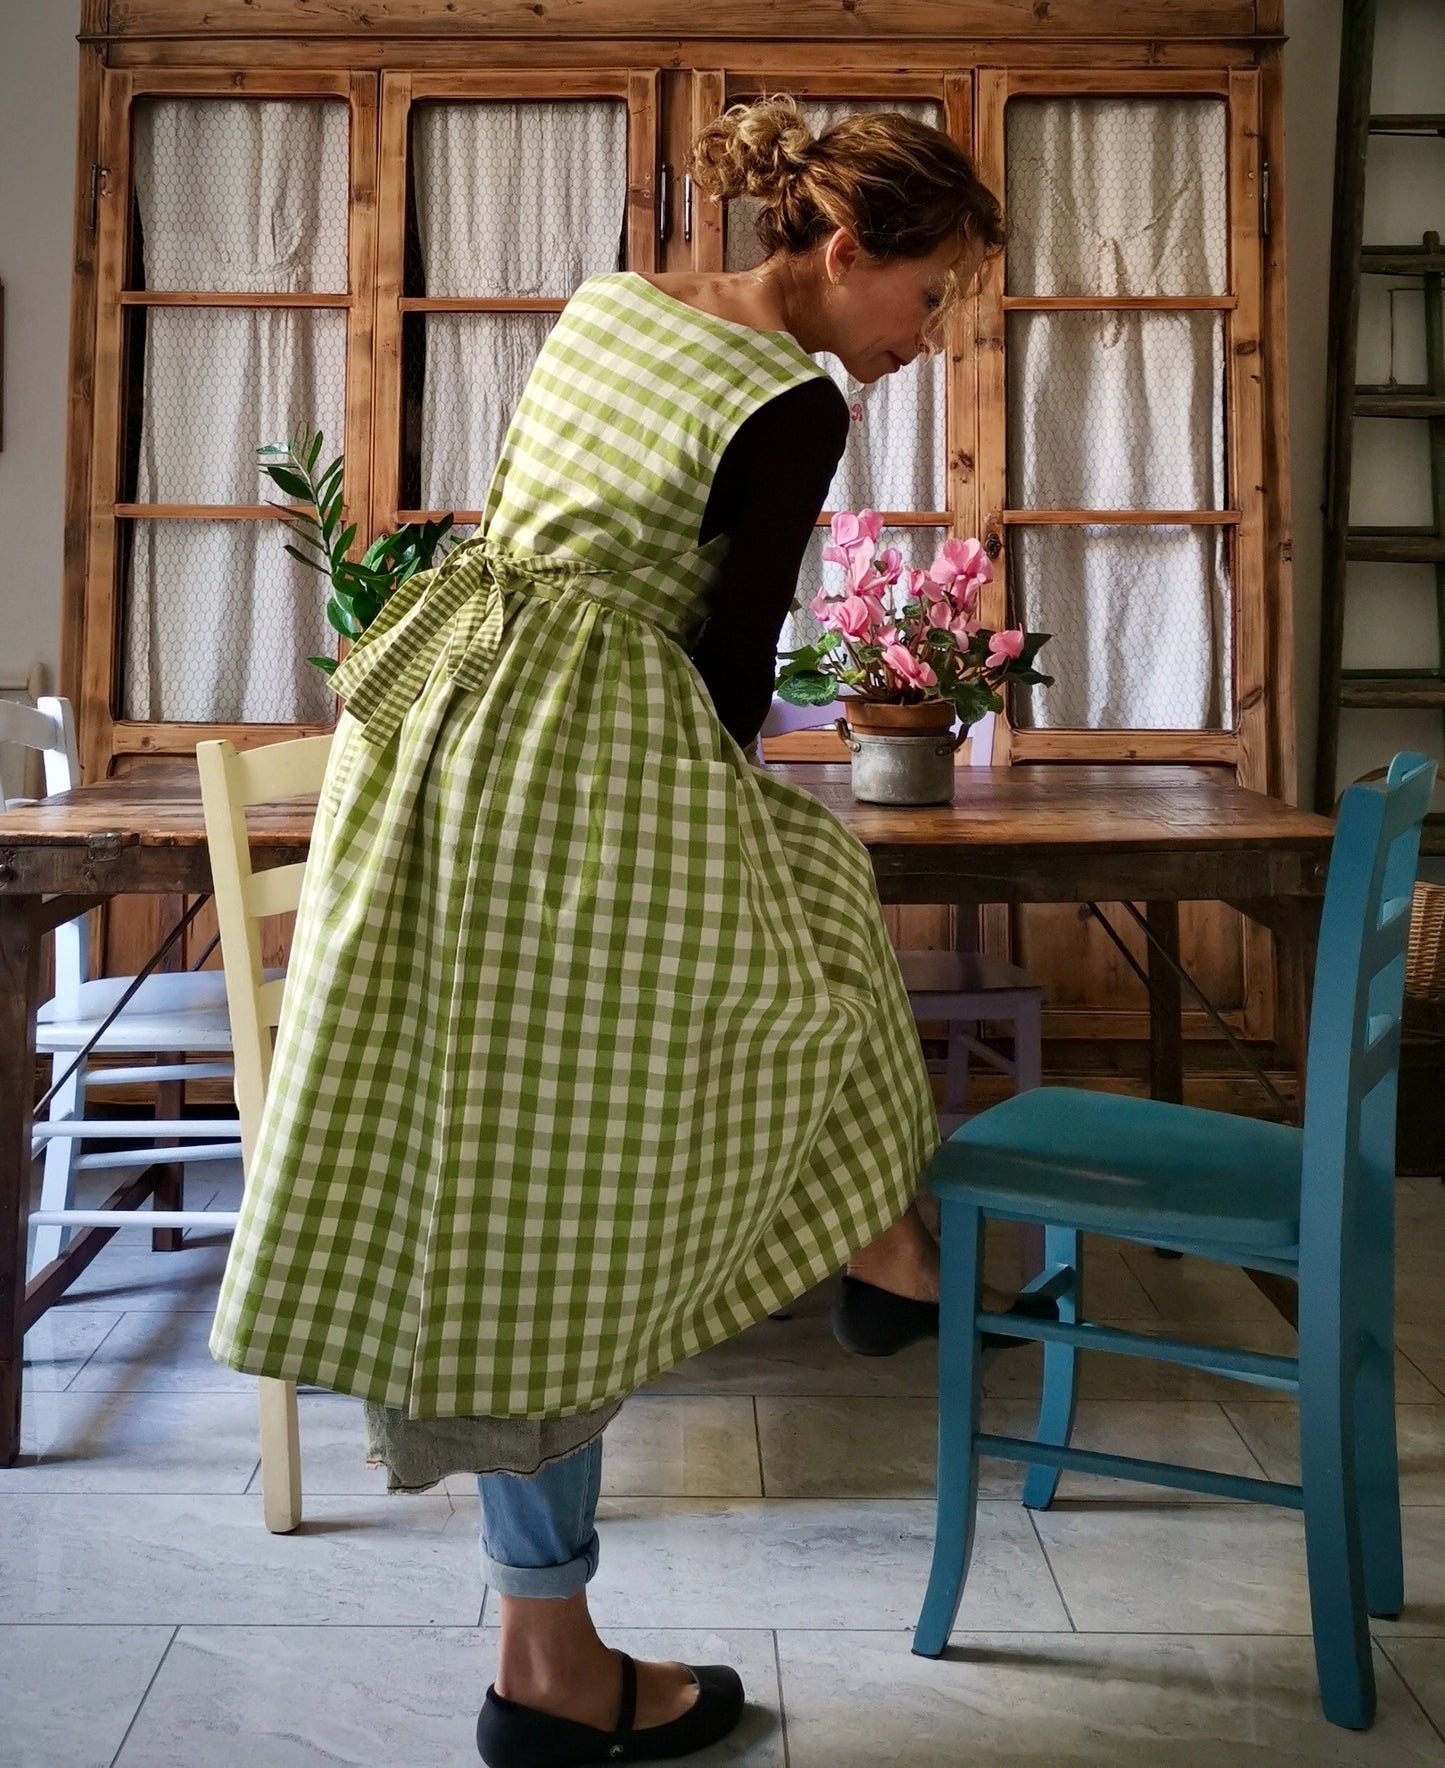 DISPONIBILE IN PREORDINE Grembiule da cucina per donna in cotone a quadri verde menta  (Ref. 47)